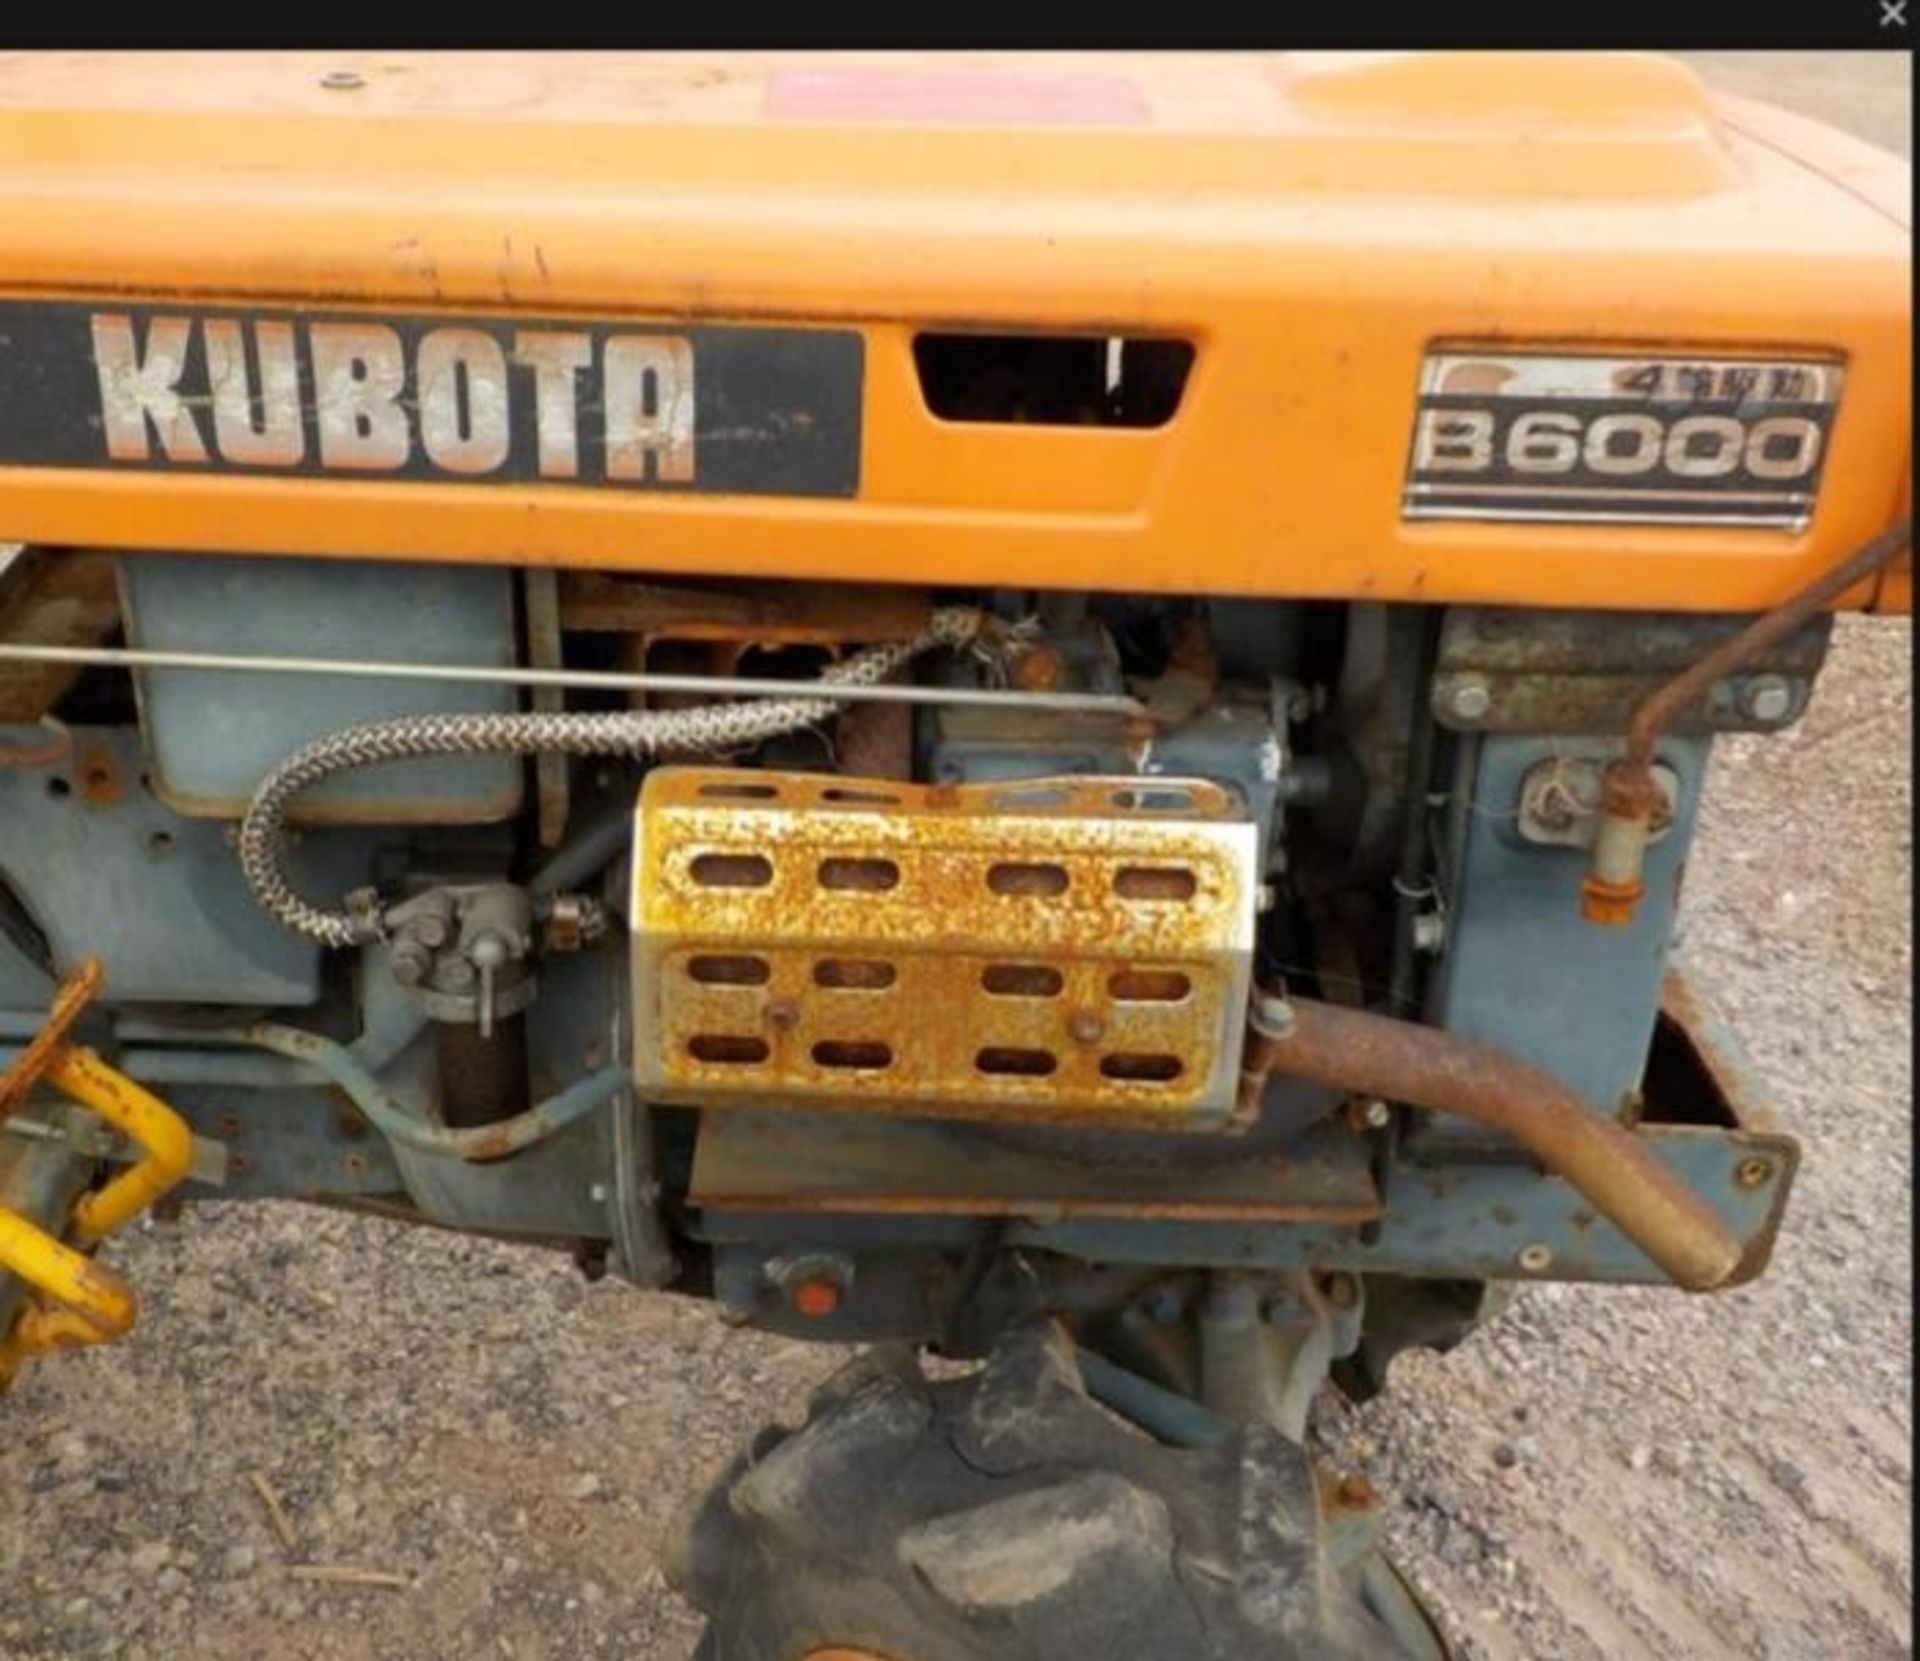 Kubota 4x4 Tractor Rotavator - Image 5 of 6